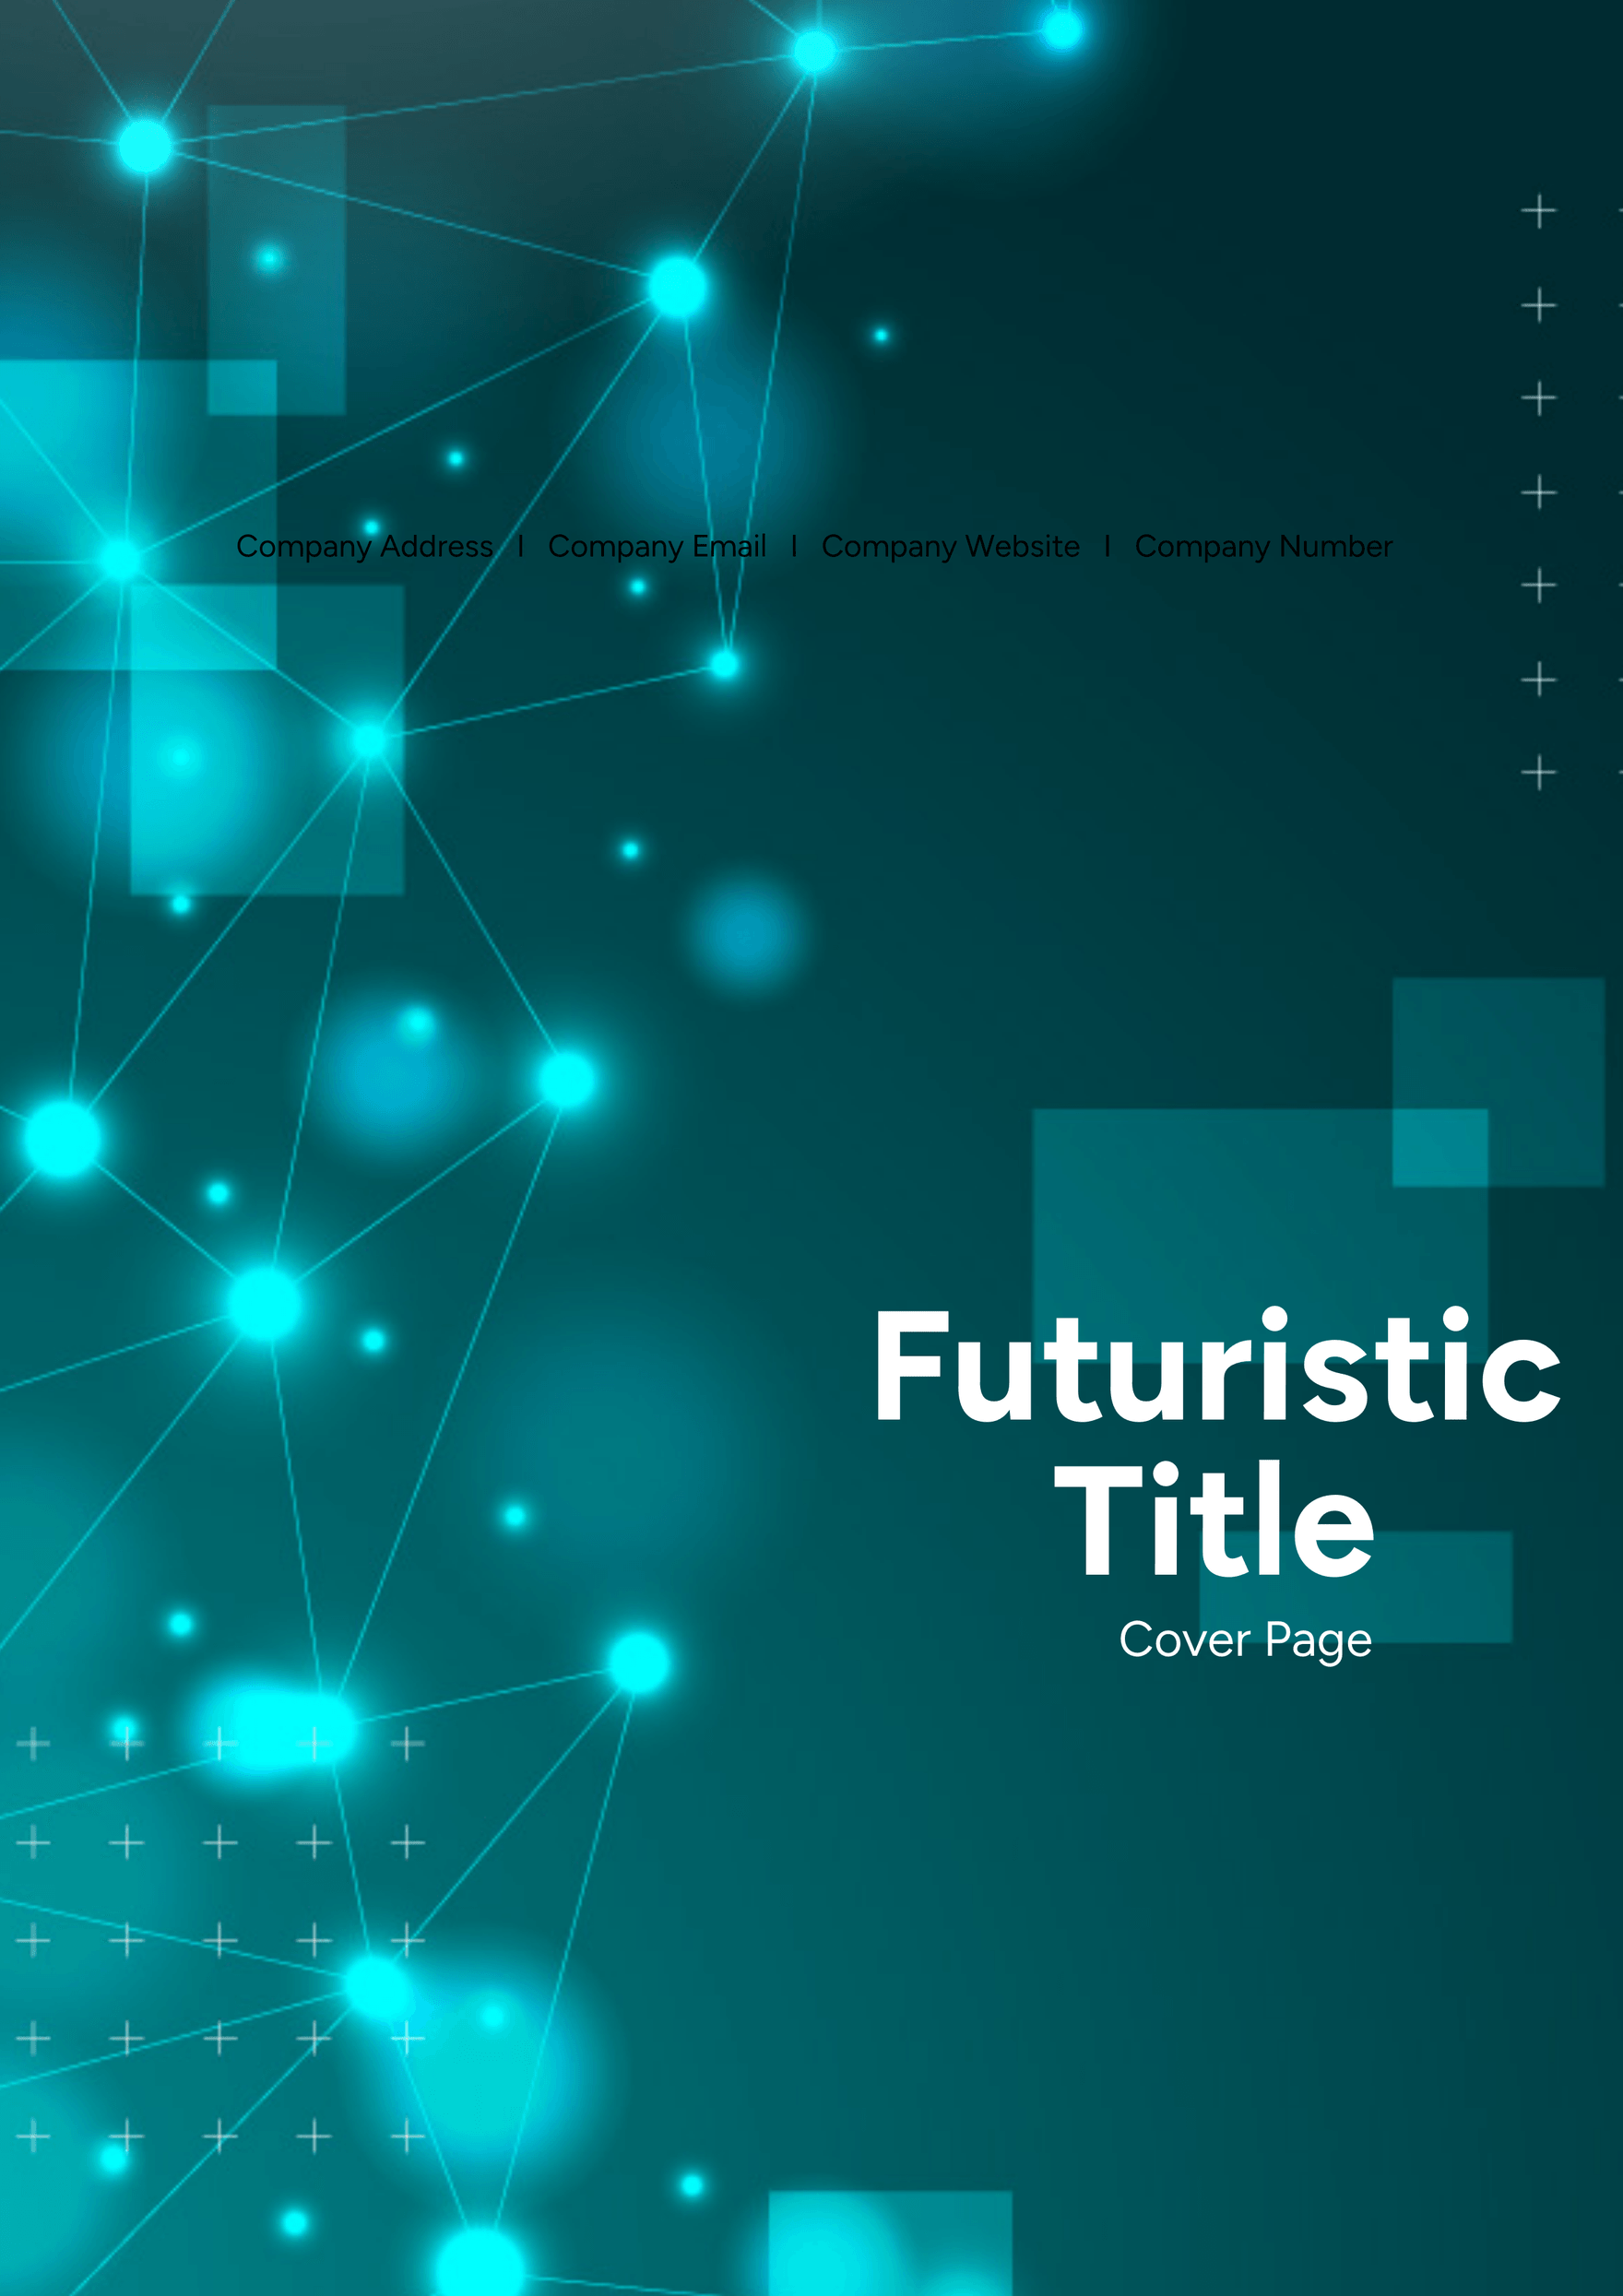 Futuristic Title Cover Page Template